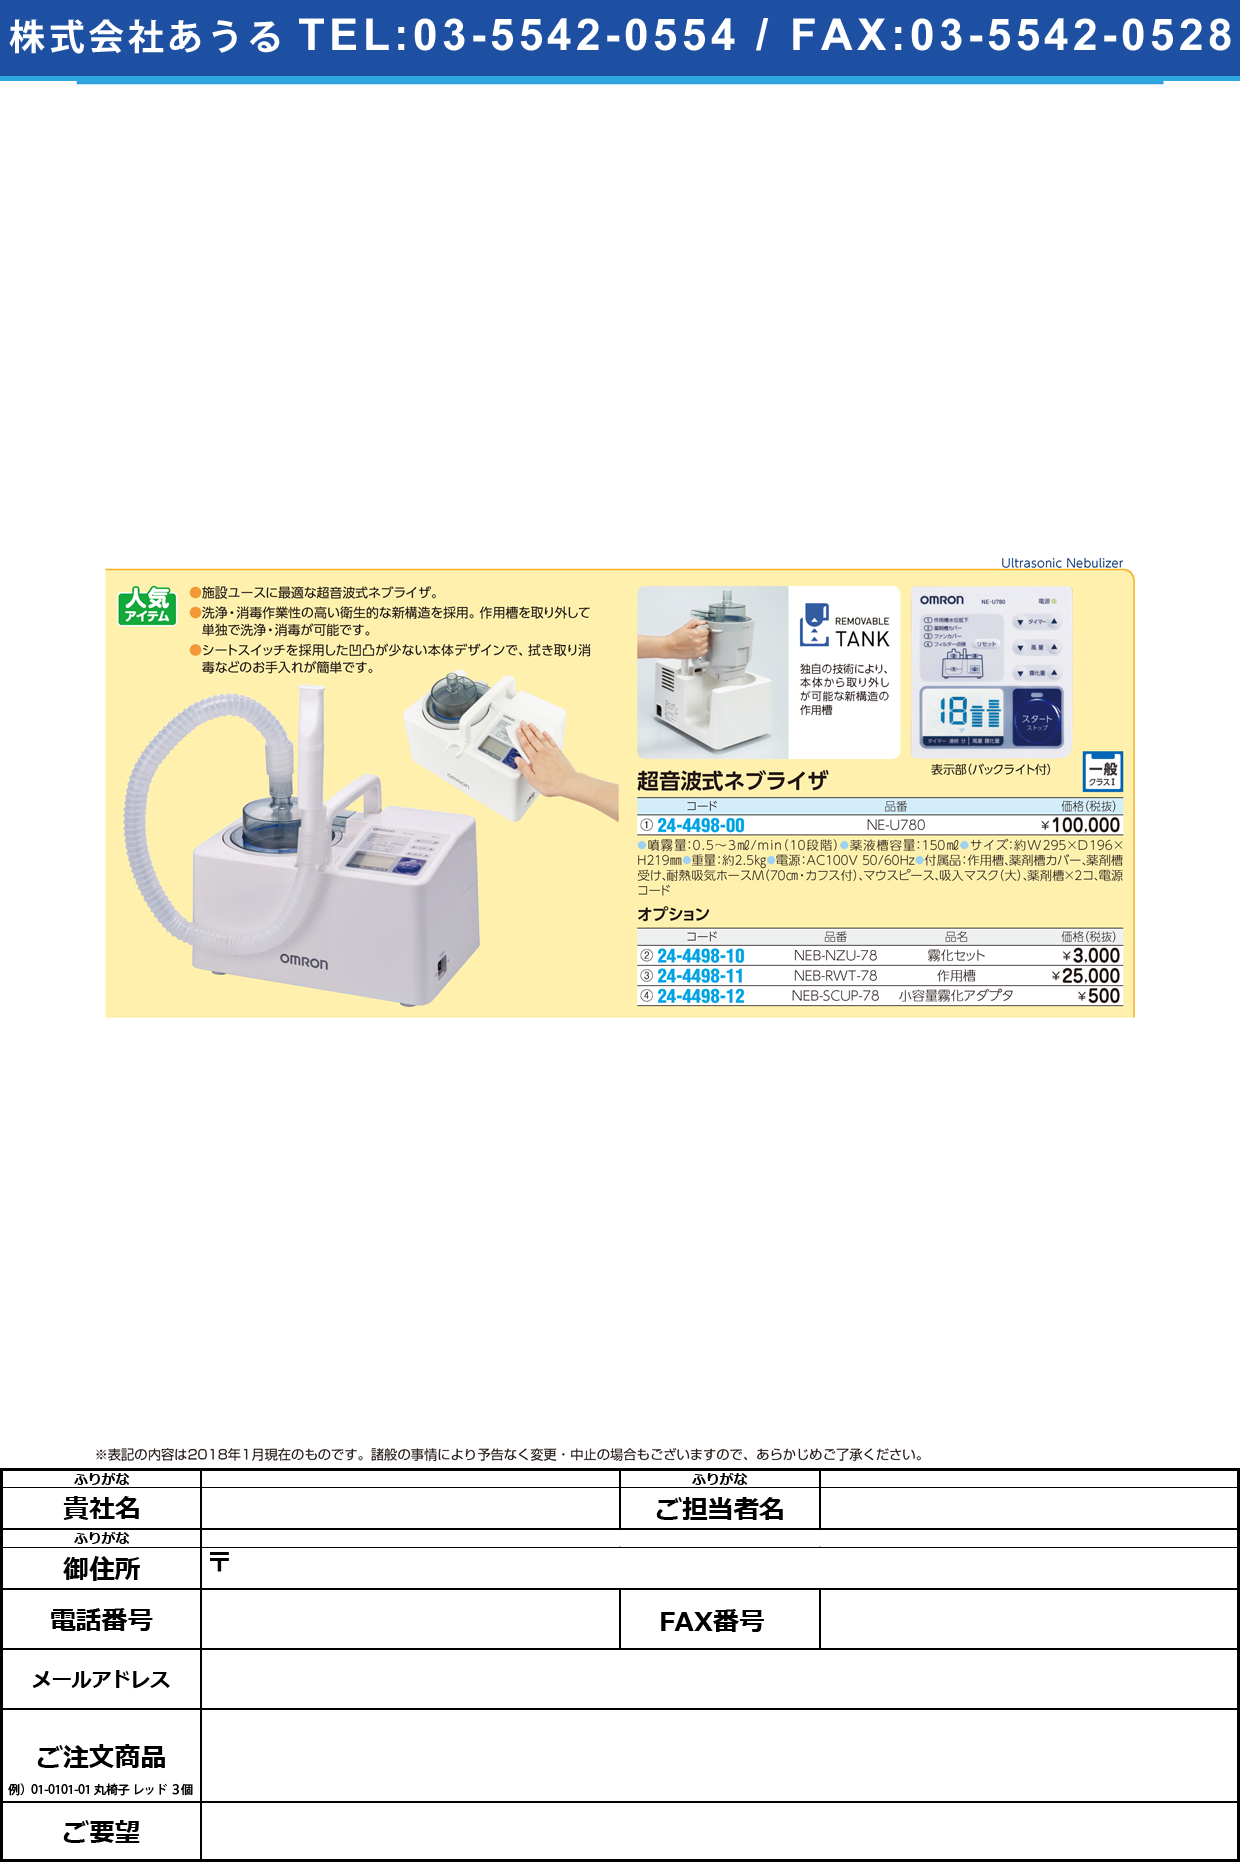 (24-4498-00)超音波式ネブライザ NE-U780 ﾁｮｳｵﾝﾊﾟｼｷﾈﾌﾞﾗｲｻﾞ(フクダコーリン)【1台単位】【2019年カタログ商品】